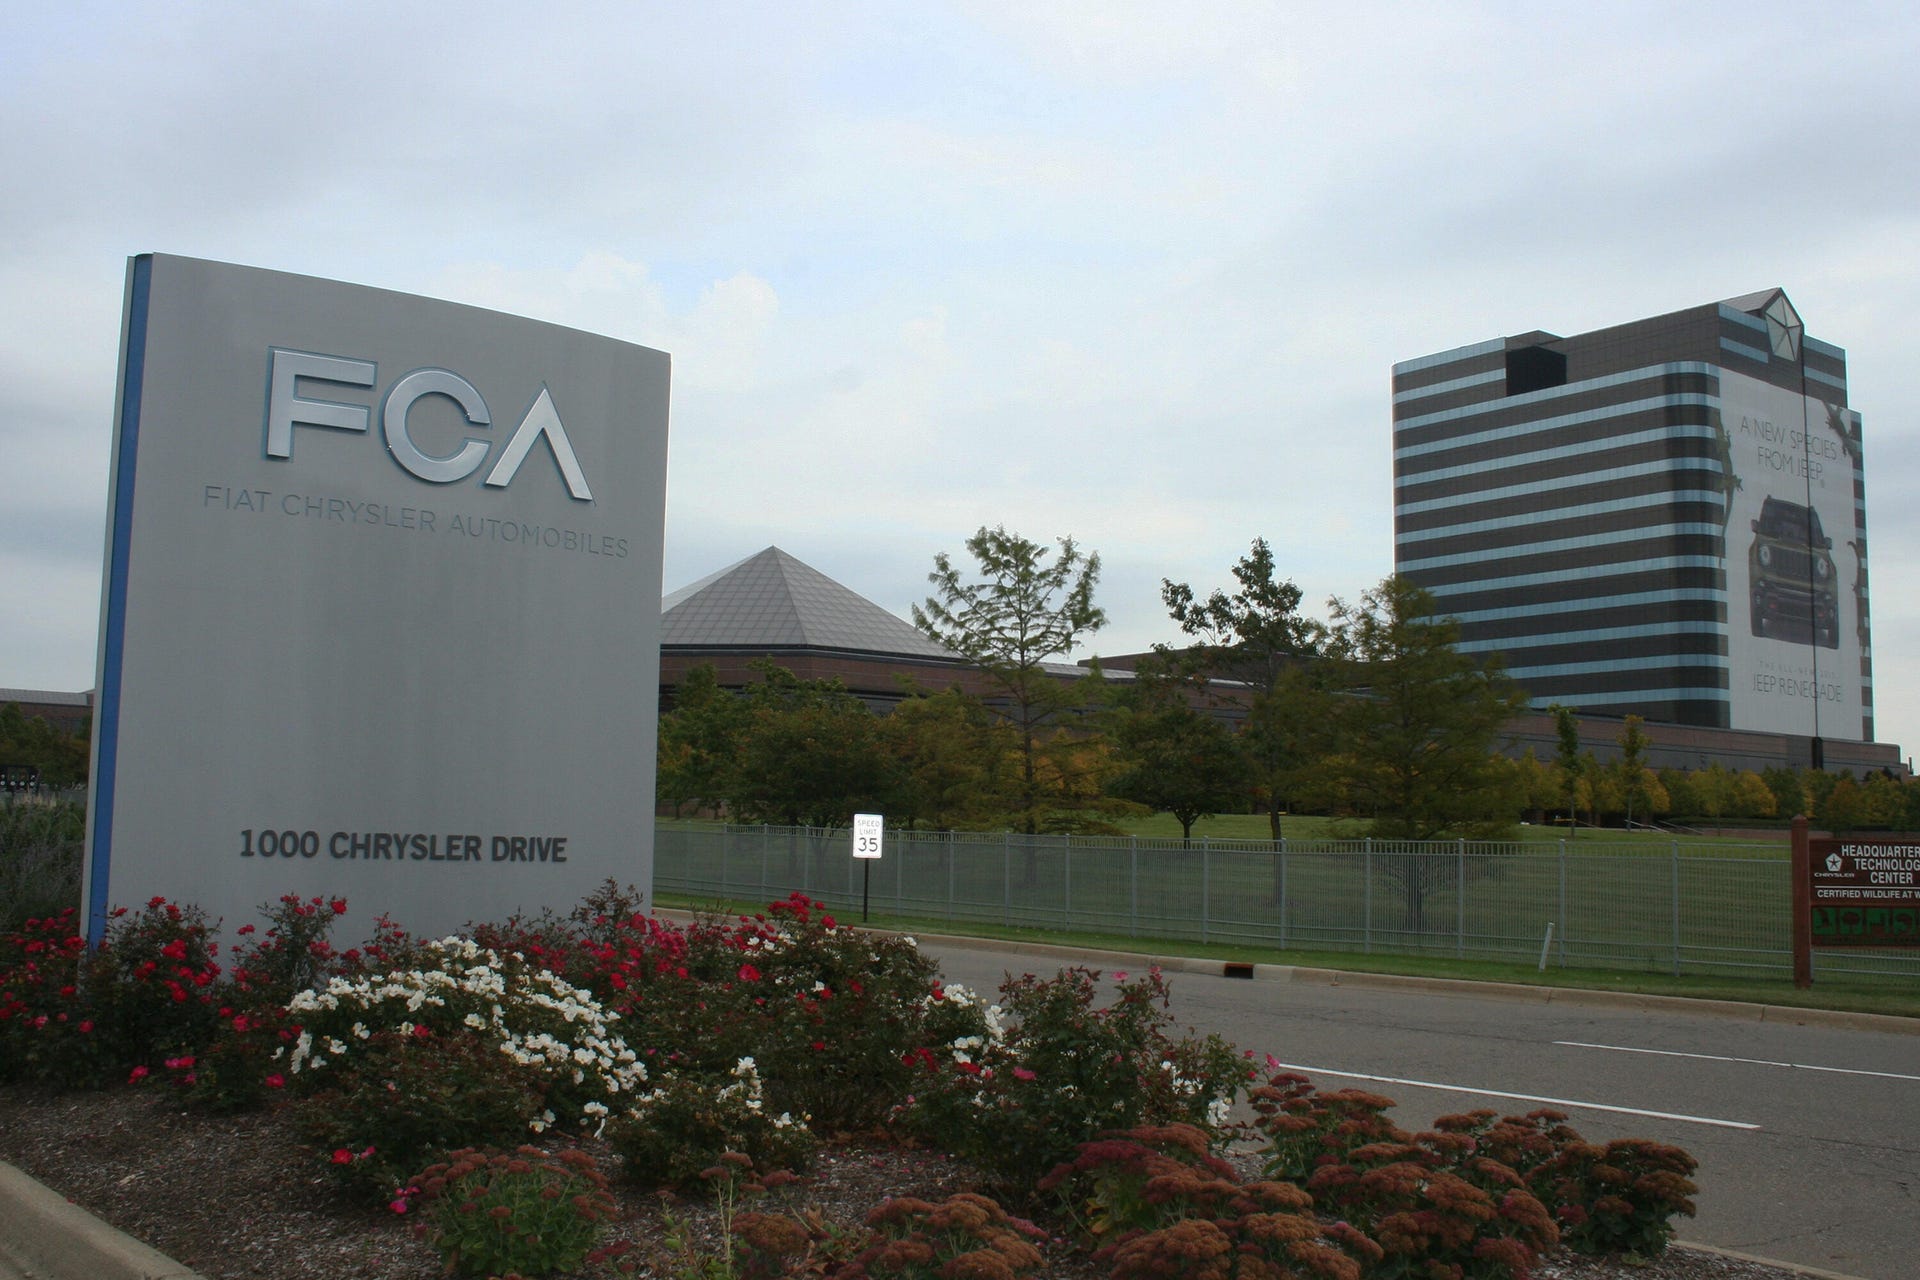 FCA corporate promo